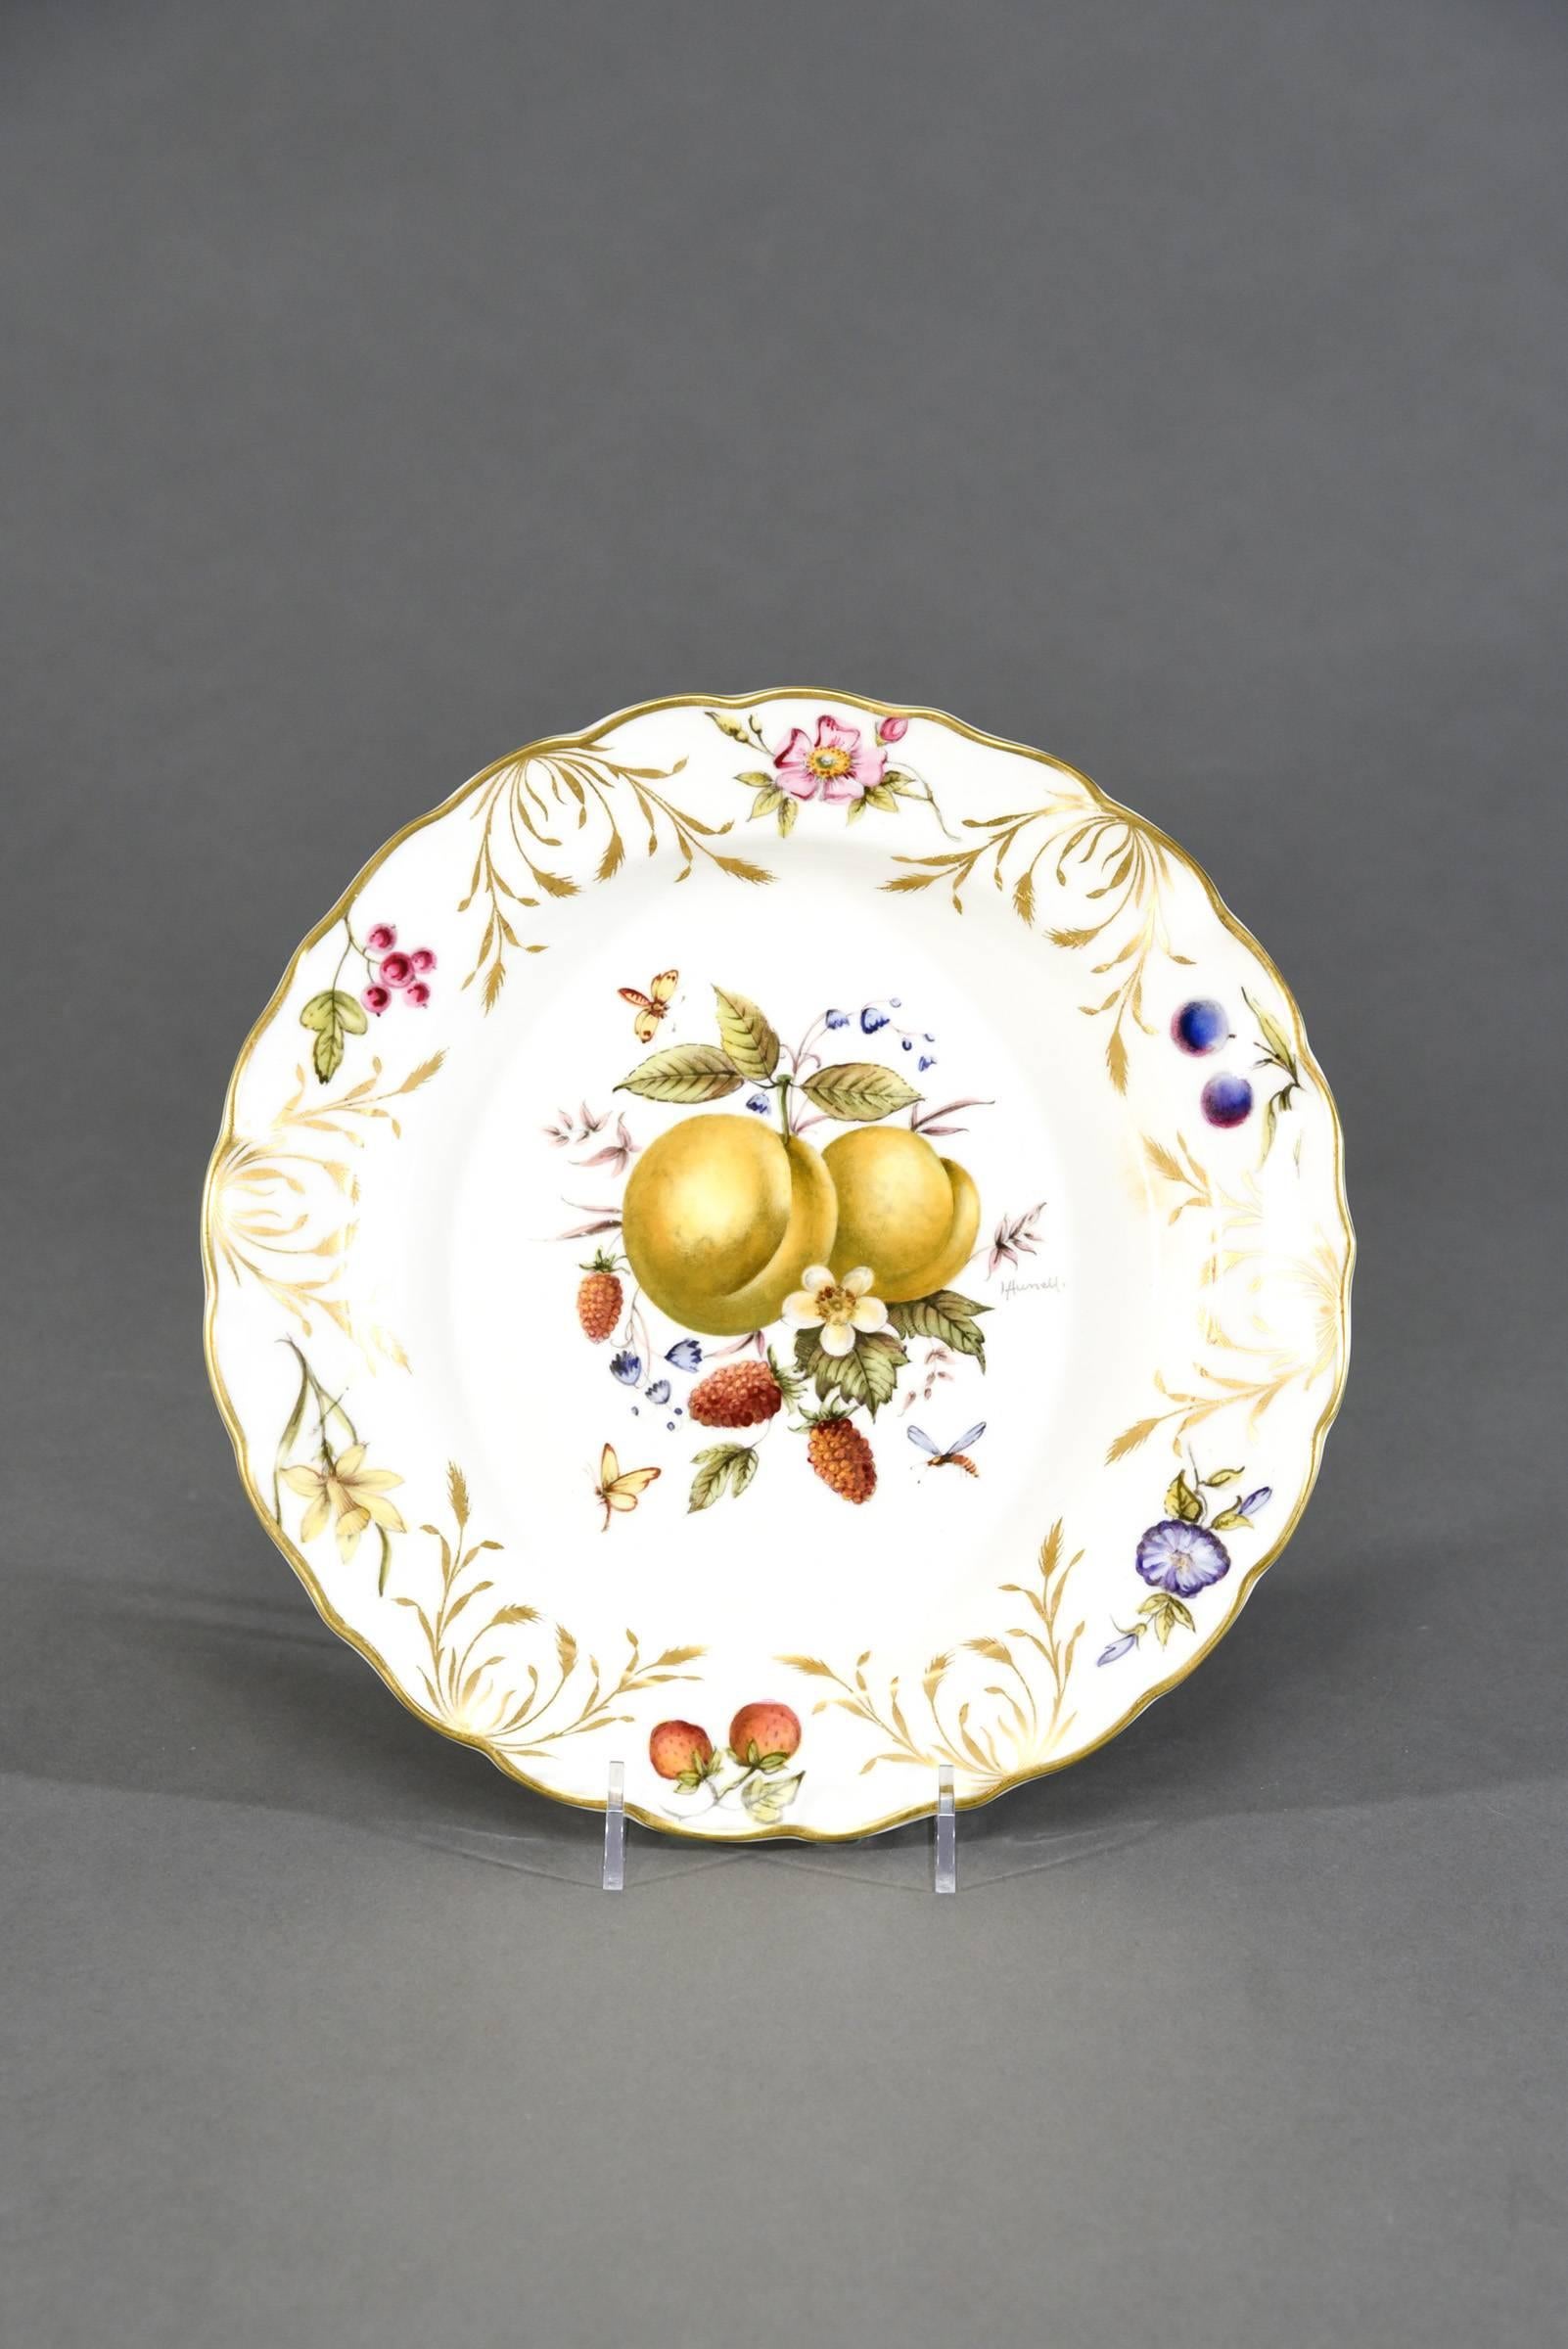 Porcelain 12 Royal Worcester Hand-Painted Dessert Plates with Fruit Artist Signed Hummel For Sale